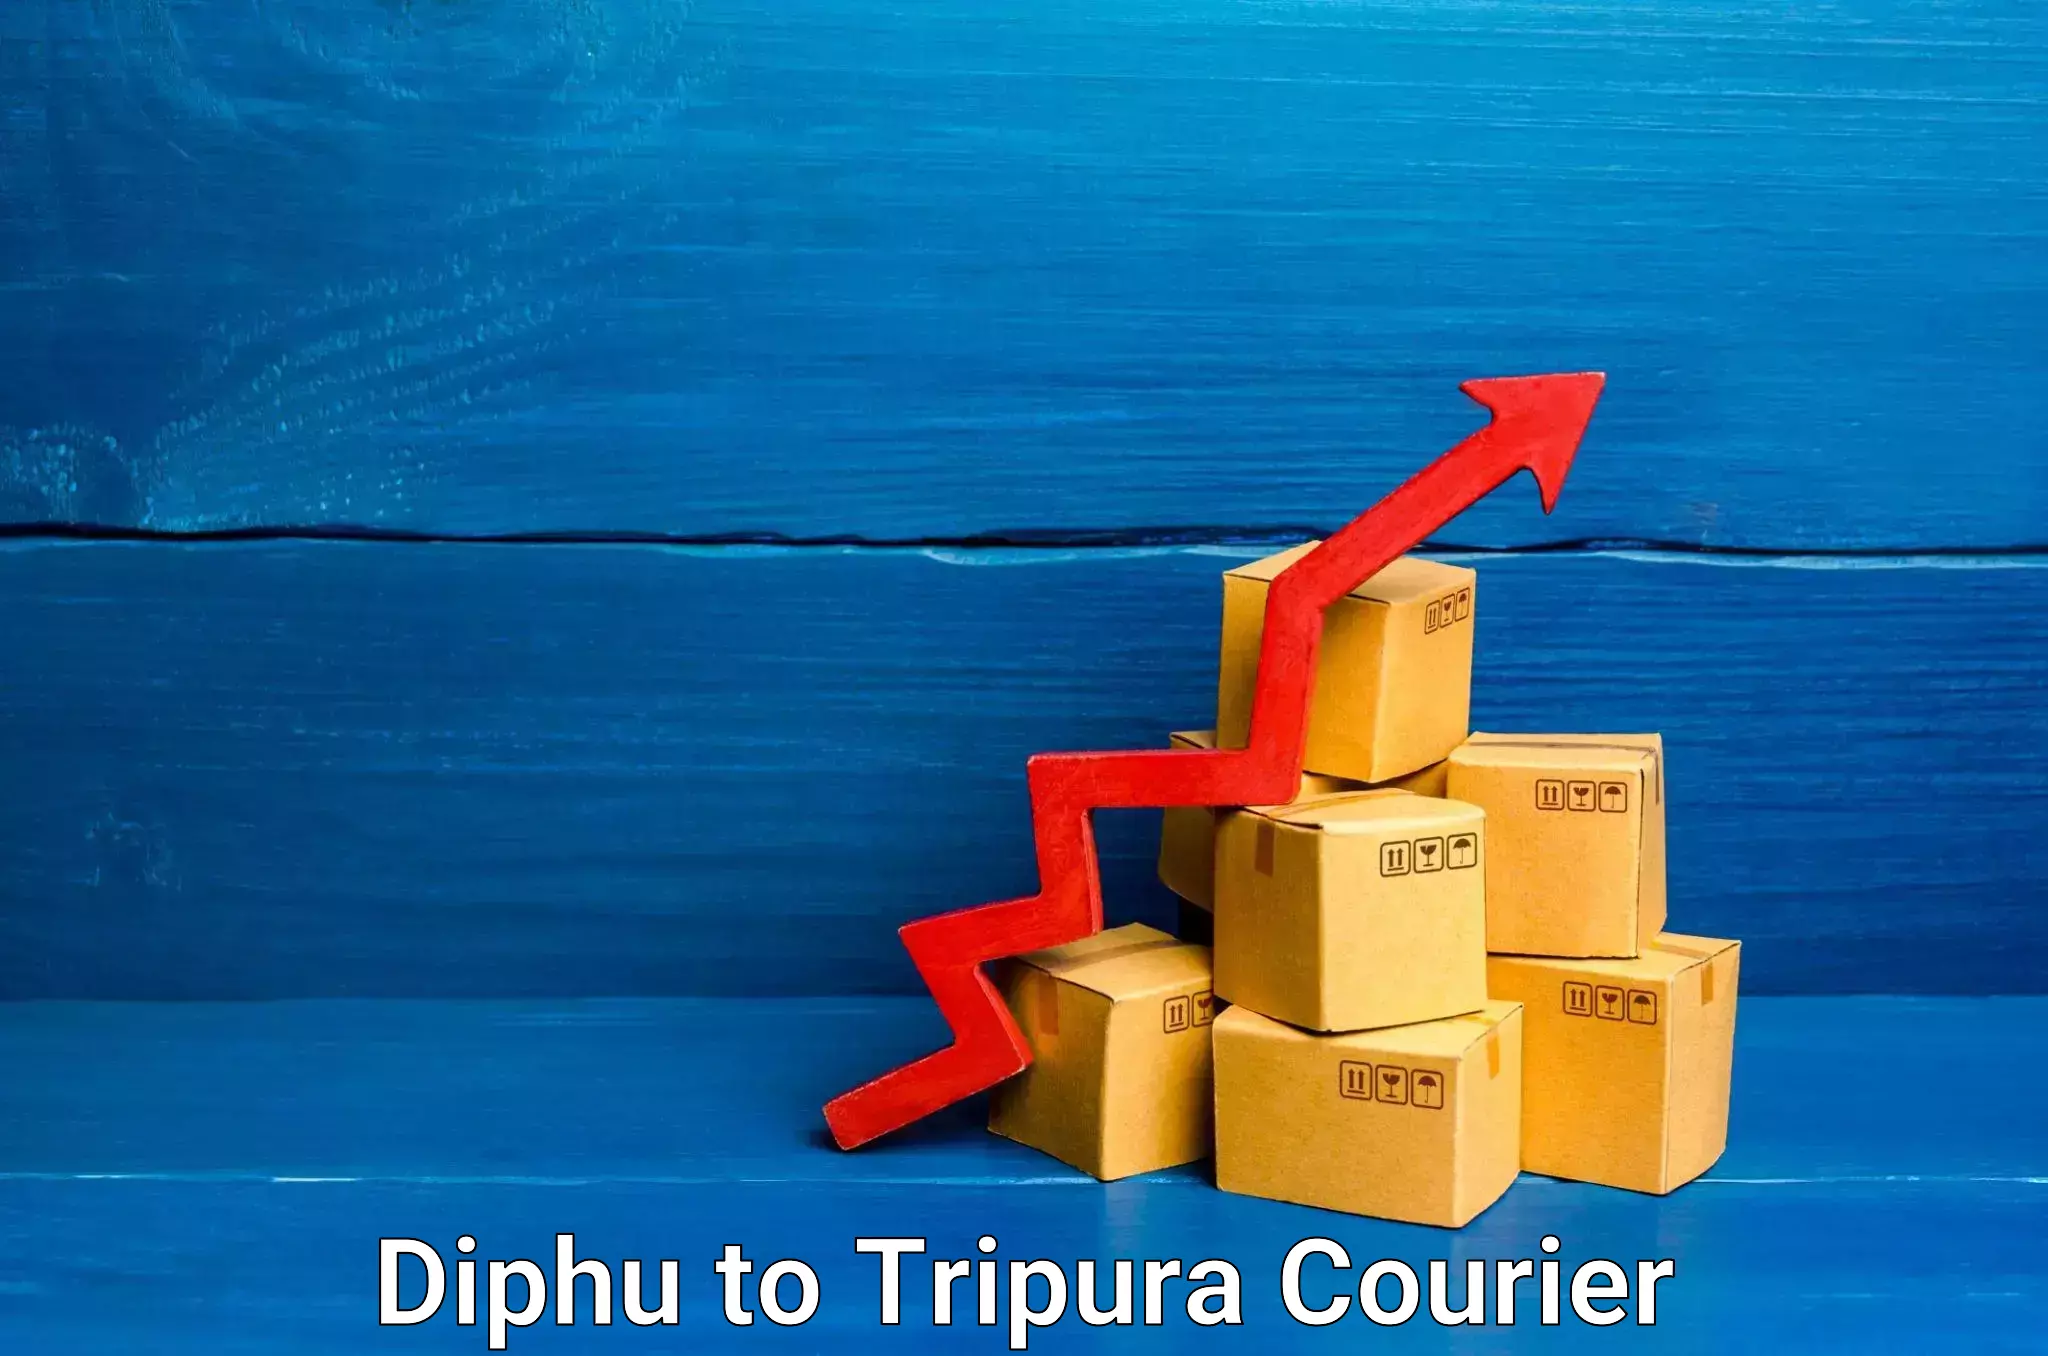 Express shipping Diphu to Udaipur Tripura